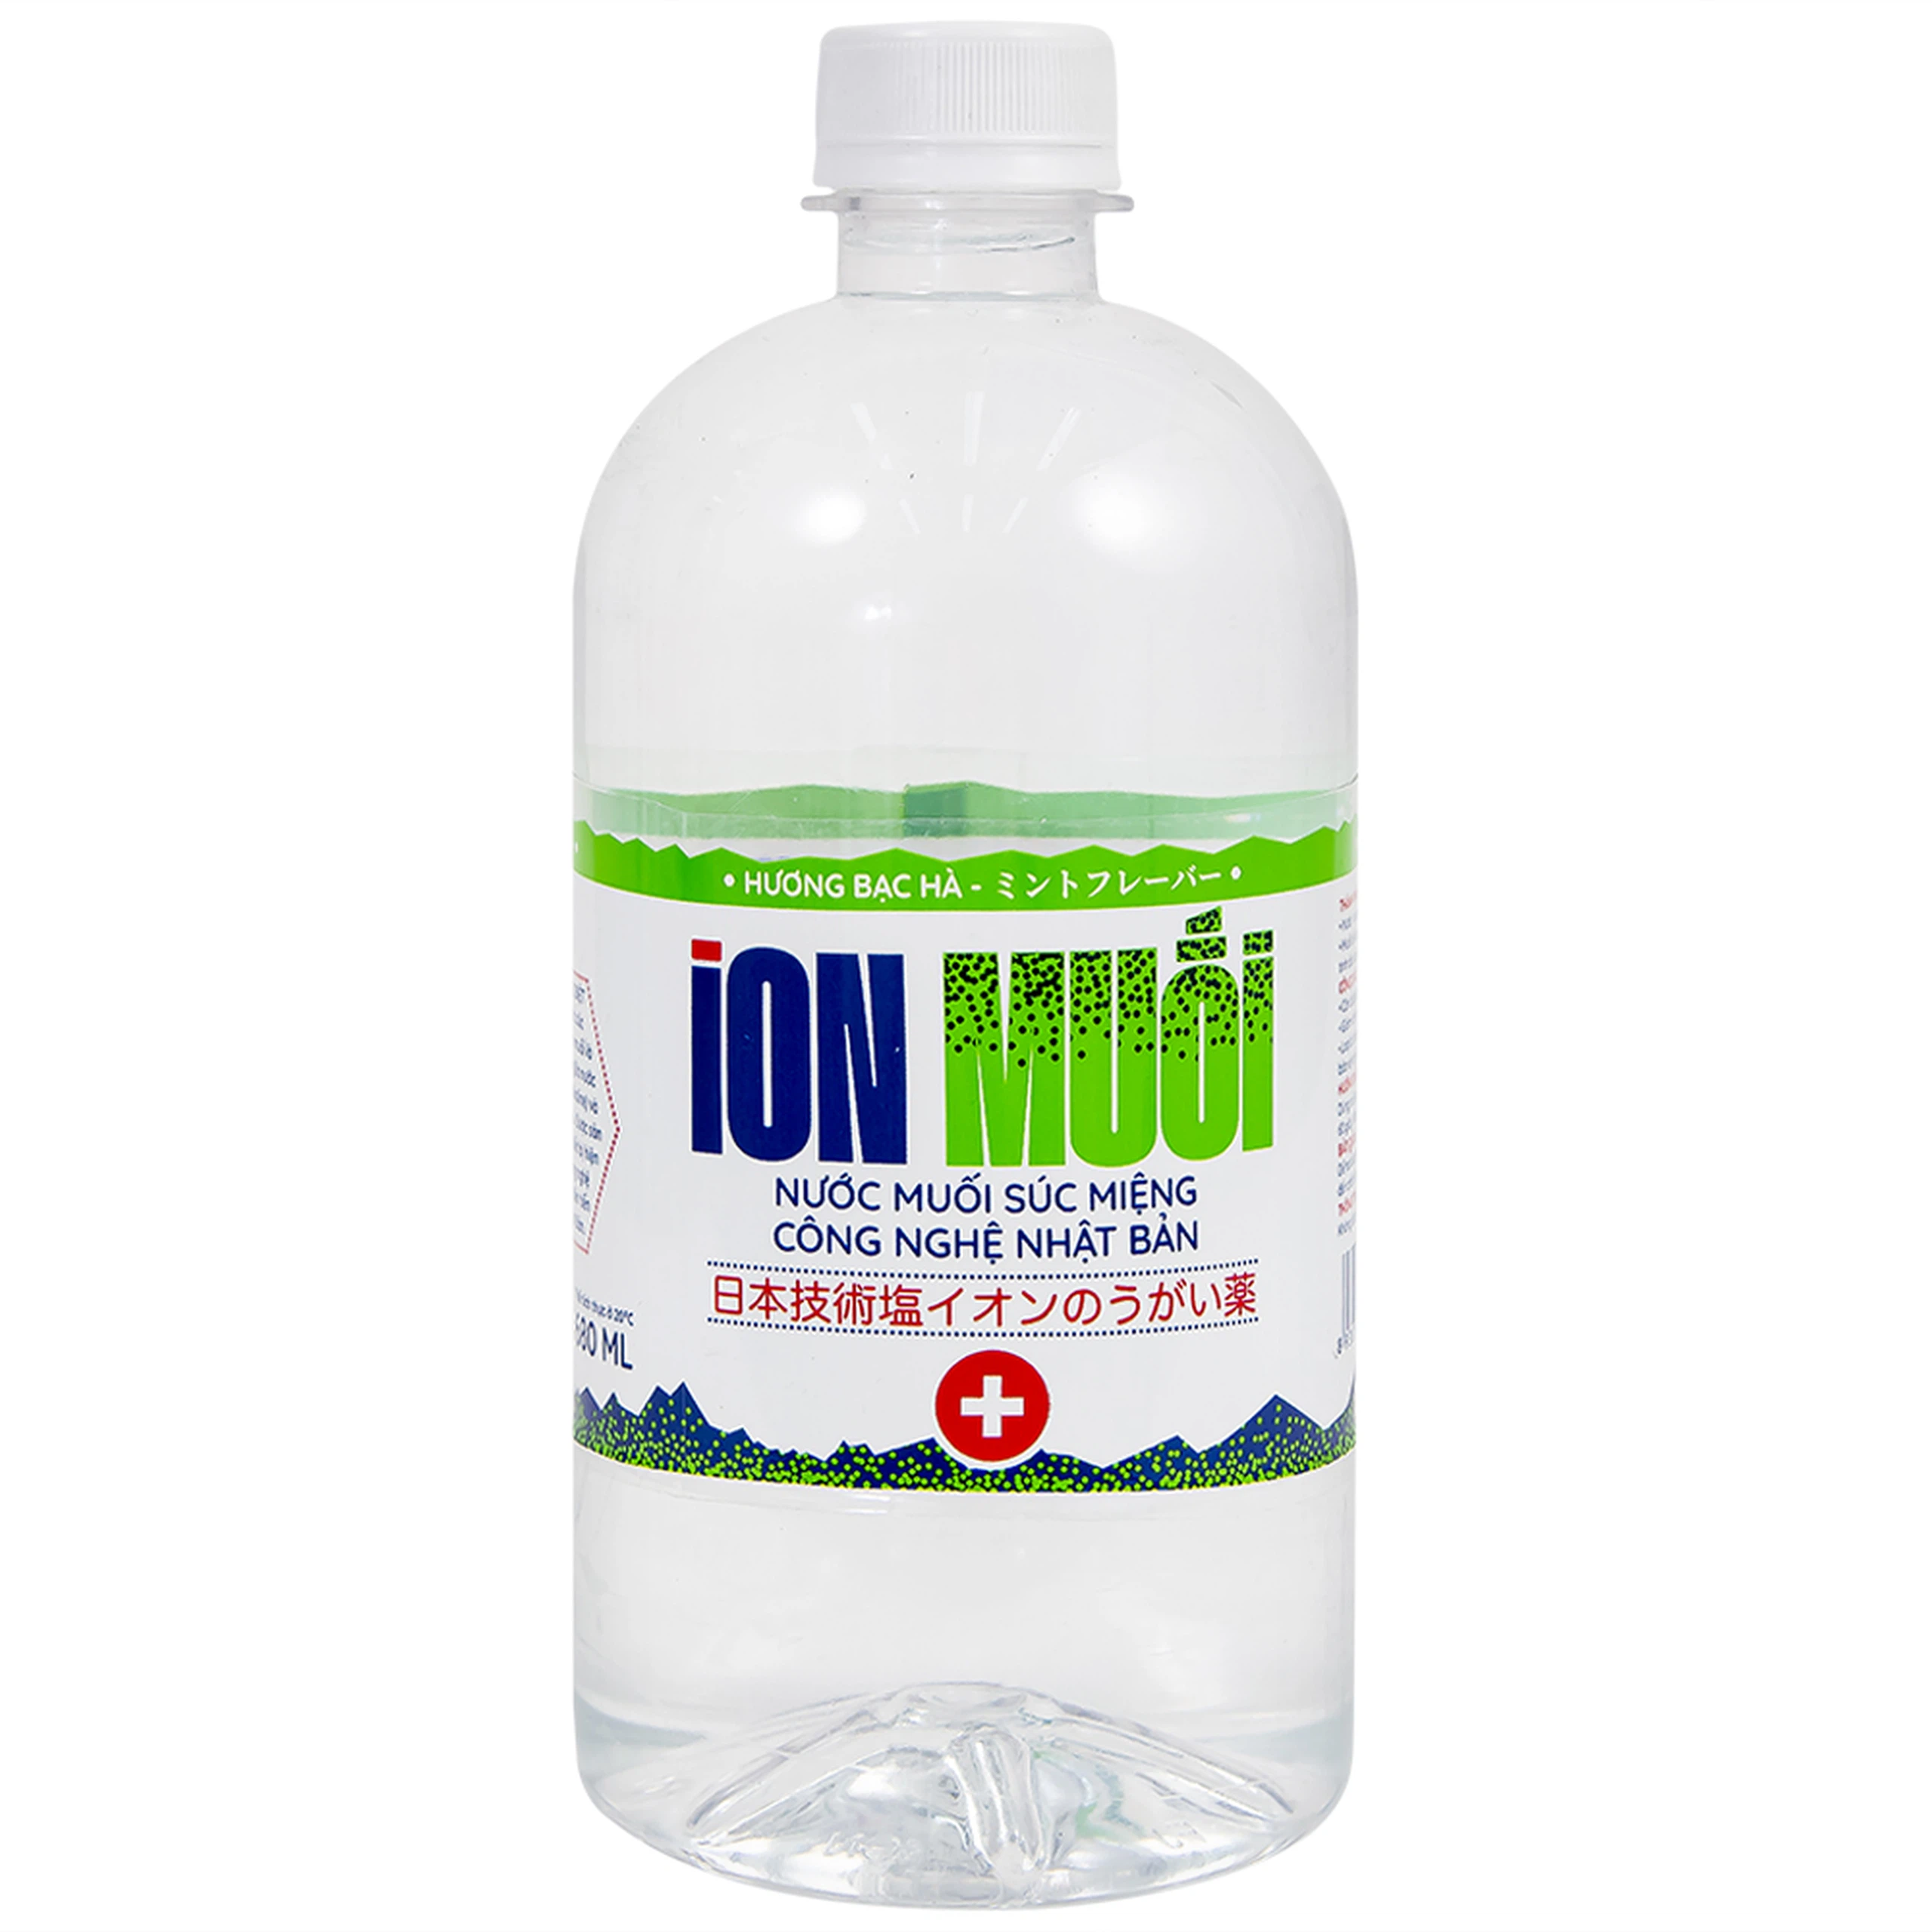 Nước muối súc miệng công nghệ Nhật Bản Ion Muối Fujiwa ngăn chặn vi khuẩn, giảm viêm họng (680ml)